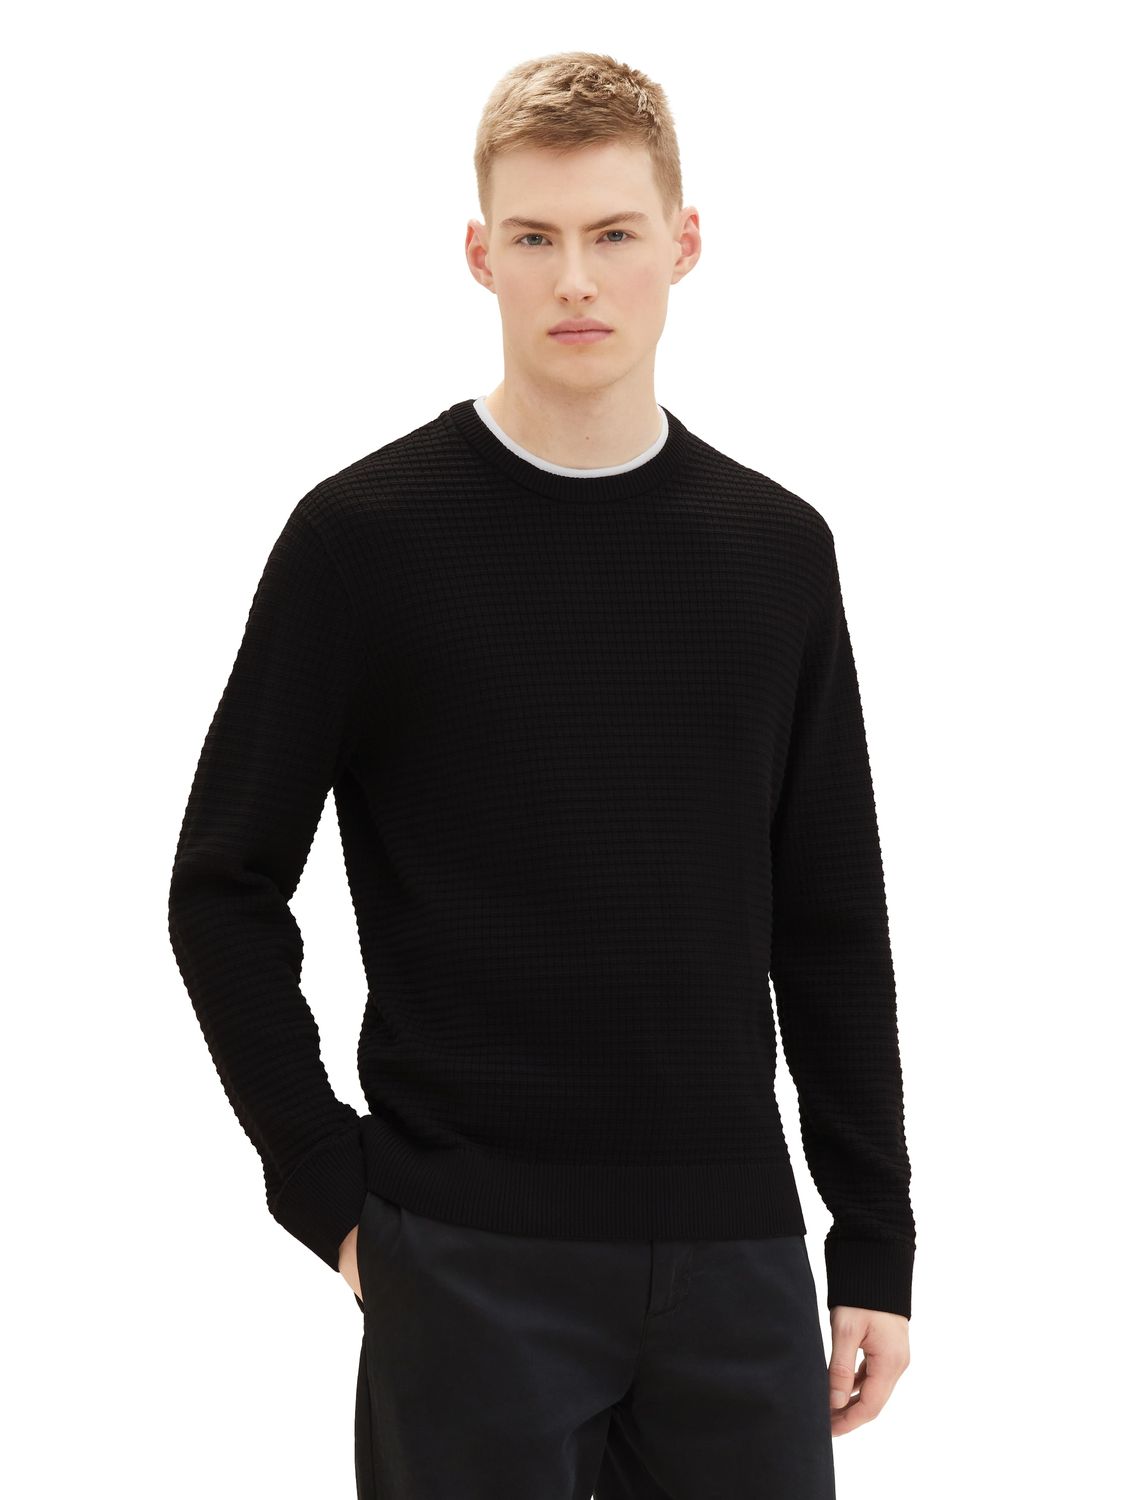 Пуловер TOM TAILOR Denim STRUCTURED DOUBLELAYER, черный пуловер tom tailor denim structured basic серый